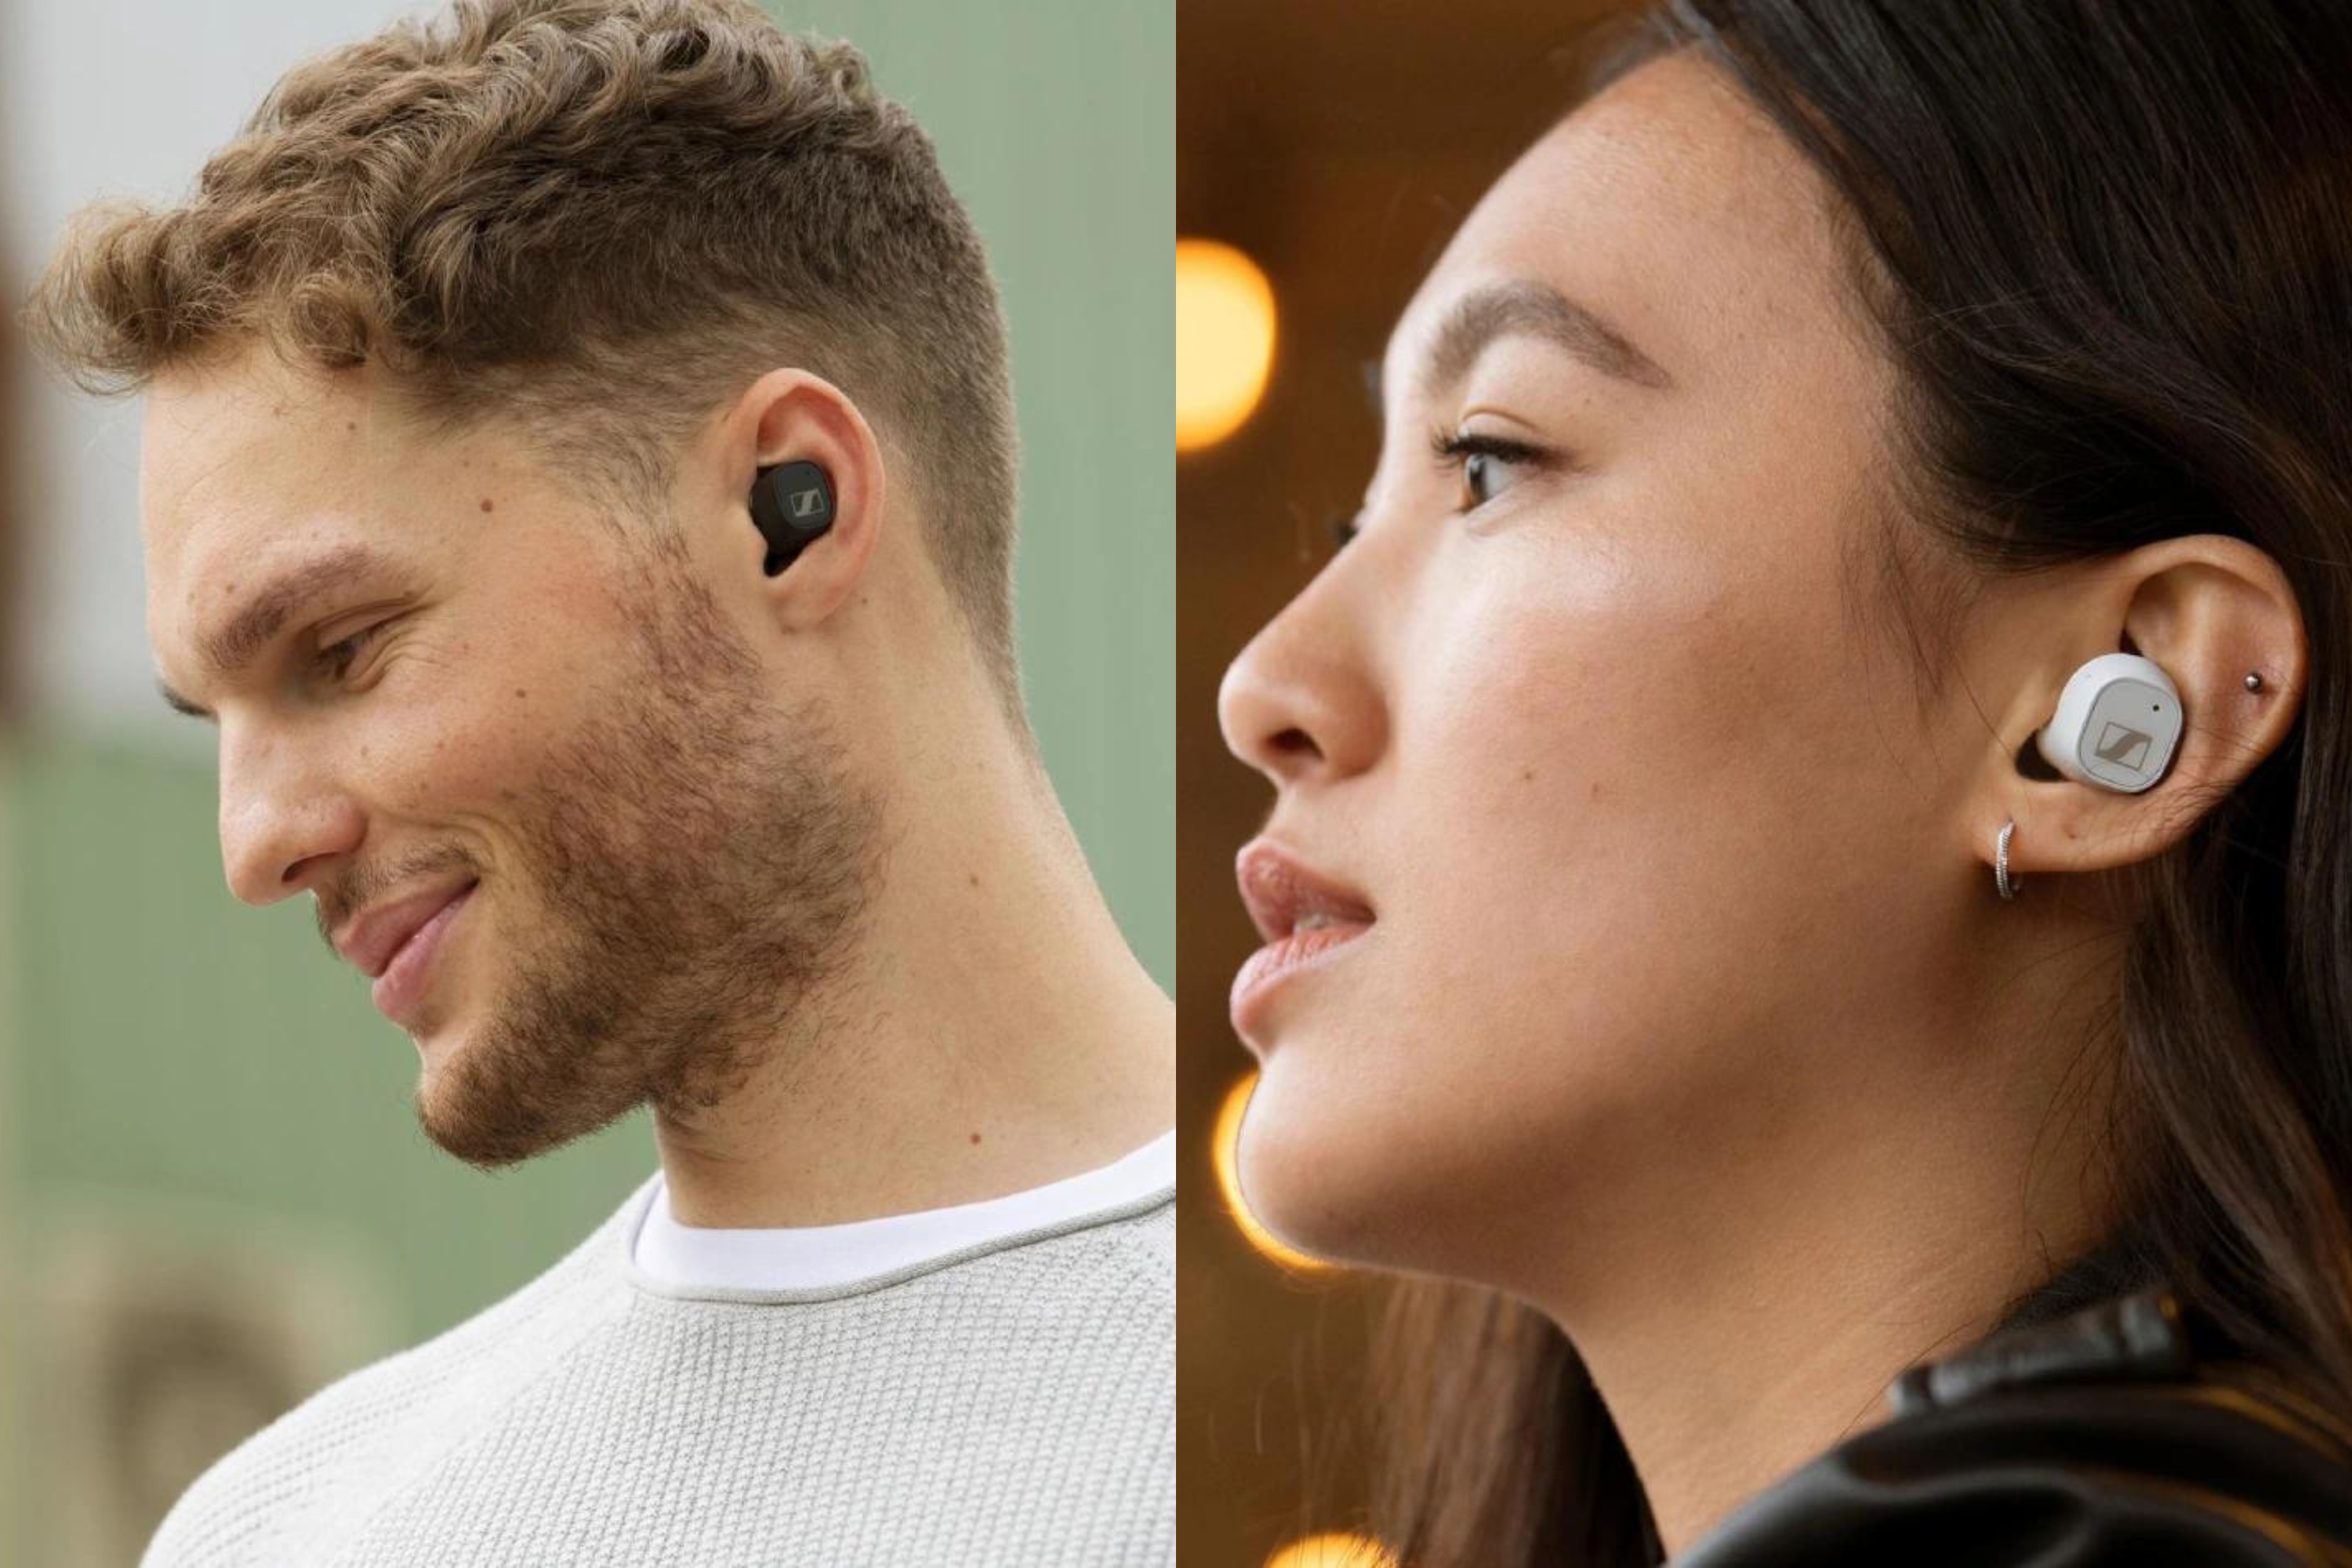 Sennheiser CX Plus True Wireless in persons ears 